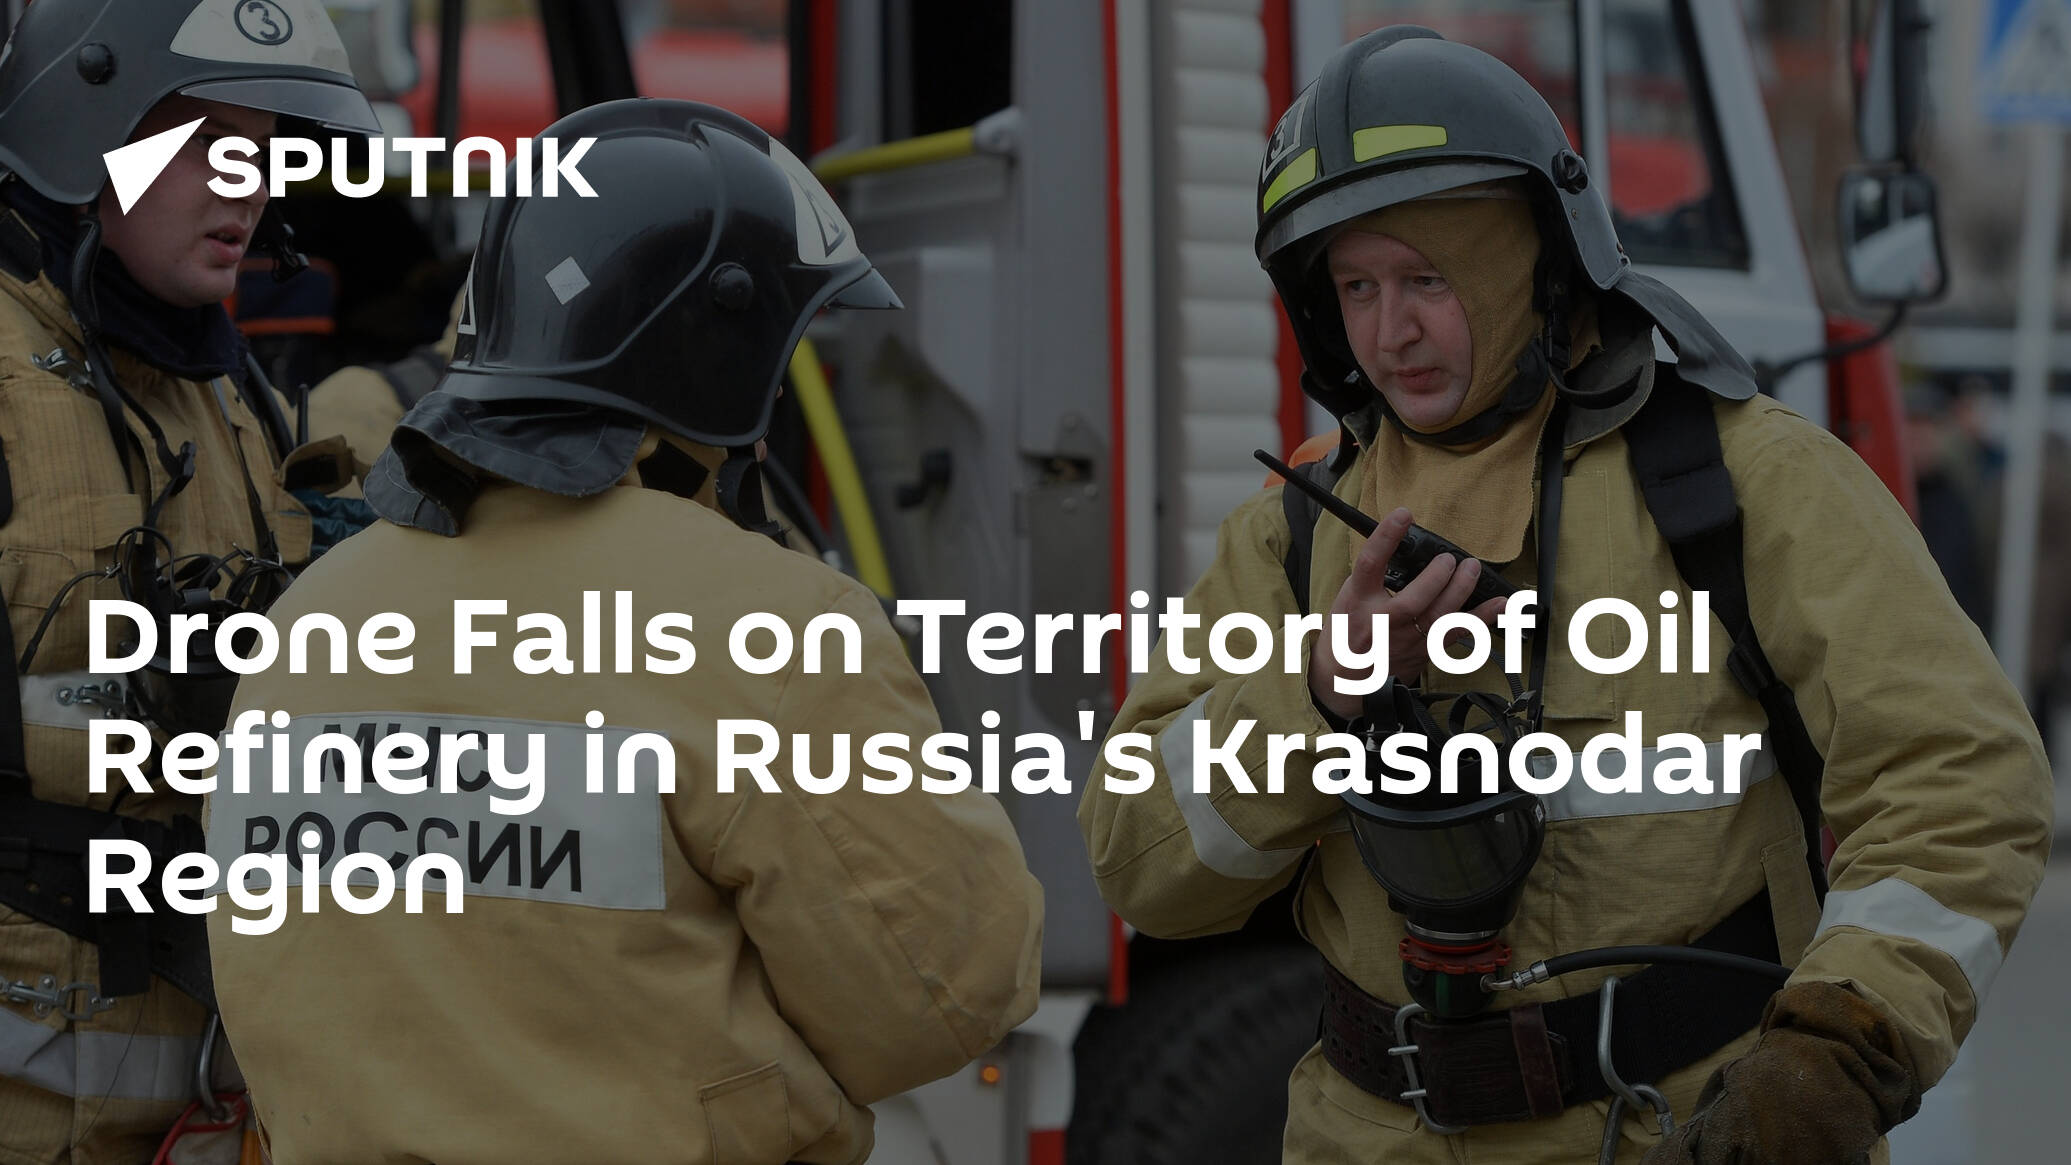 Drone Falls on Territory of Oil Refinery in Russia's Krasnodar Region